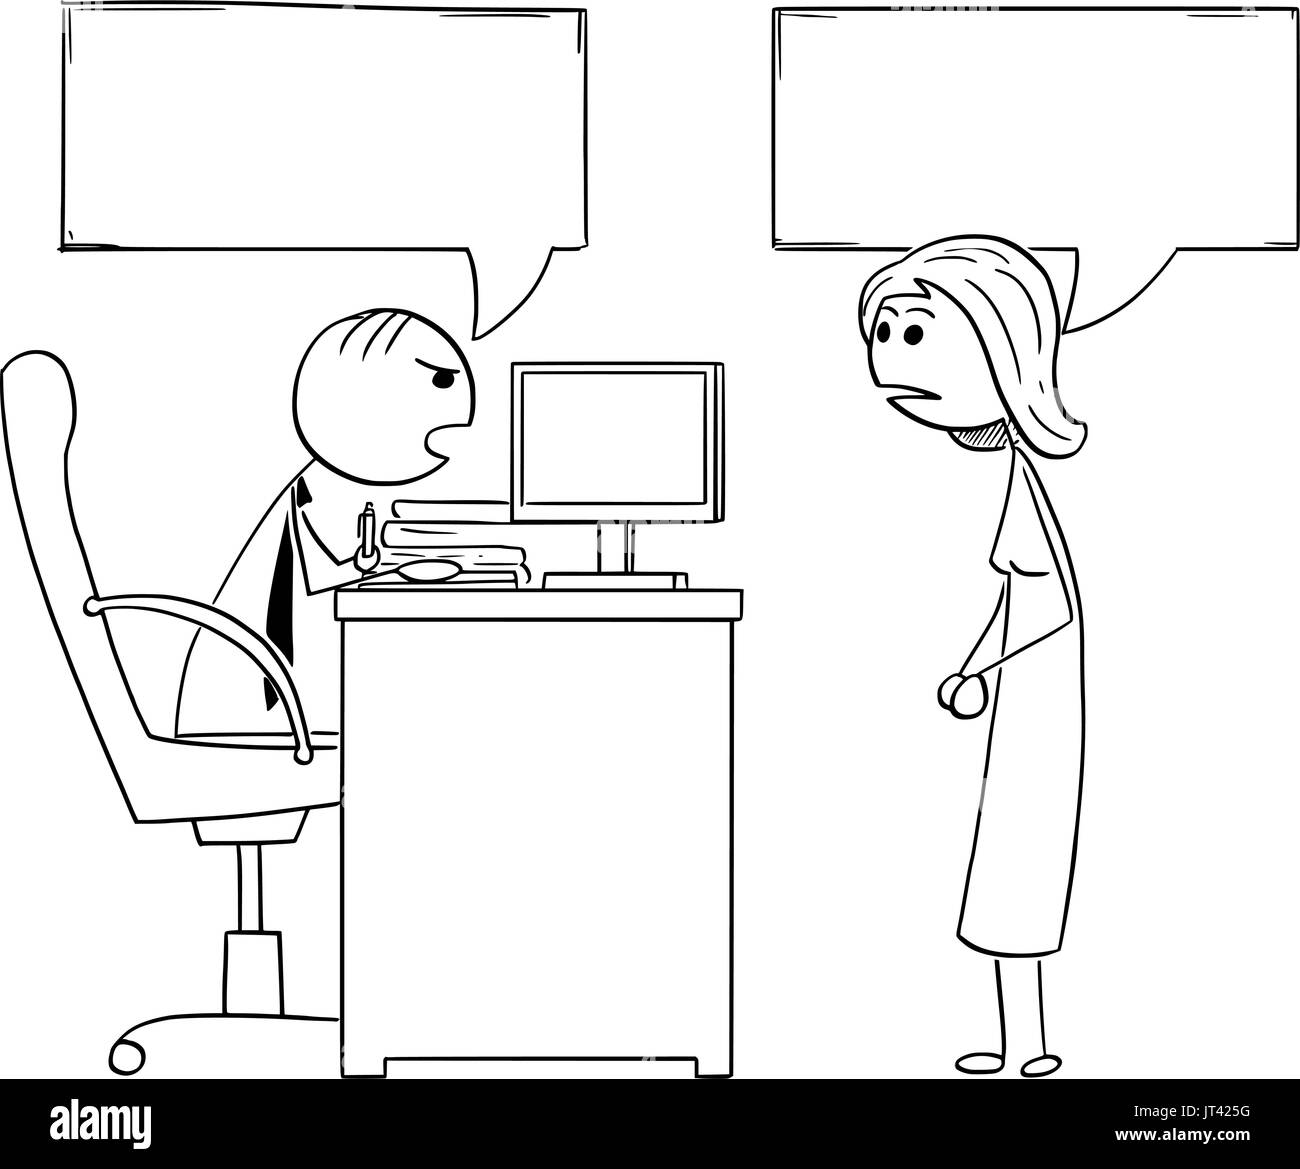 Cartoon illustrazione di stick uomo manager boss seduto nel suo ufficio e a parlare con il dipendente di sesso femminile.Due vuoto discorso bolle o palloncini al di sopra di loro h Illustrazione Vettoriale